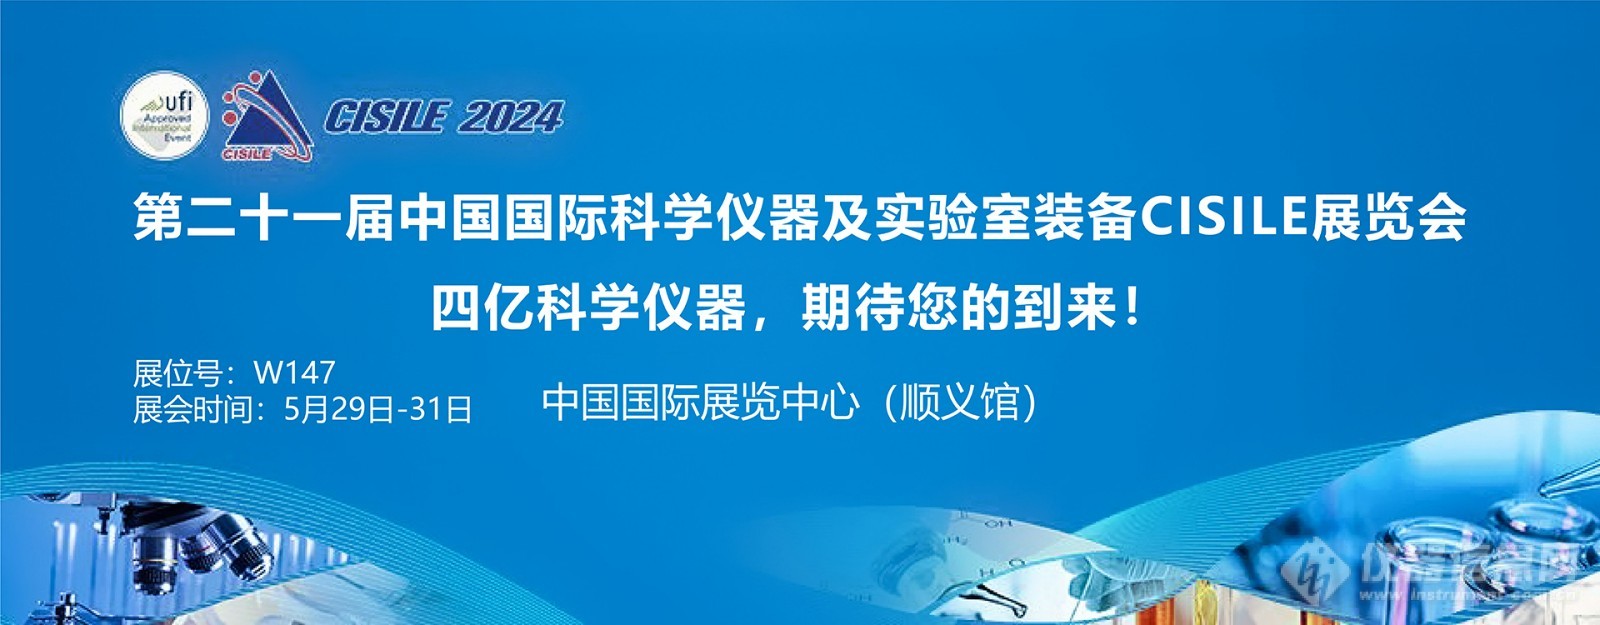 北京科学仪器设备展_官网banner_画板 1.jpg